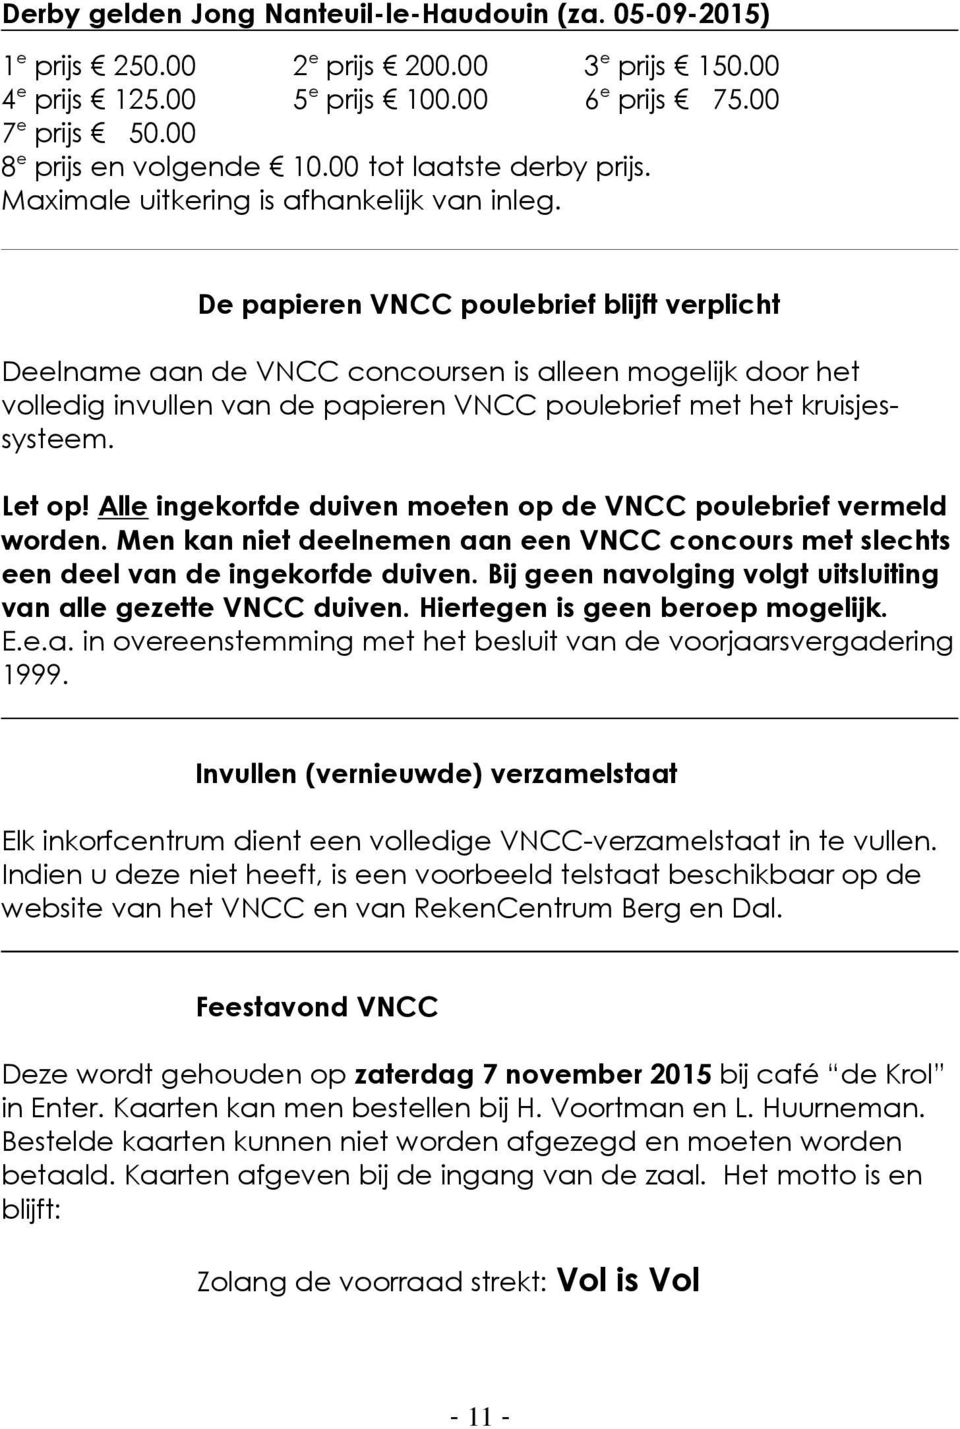 De papieren VNCC poulebrief blijft verplicht Deelname aan de VNCC concoursen is alleen mogelijk door het volledig invullen van de papieren VNCC poulebrief met het kruisjessysteem. Let op!